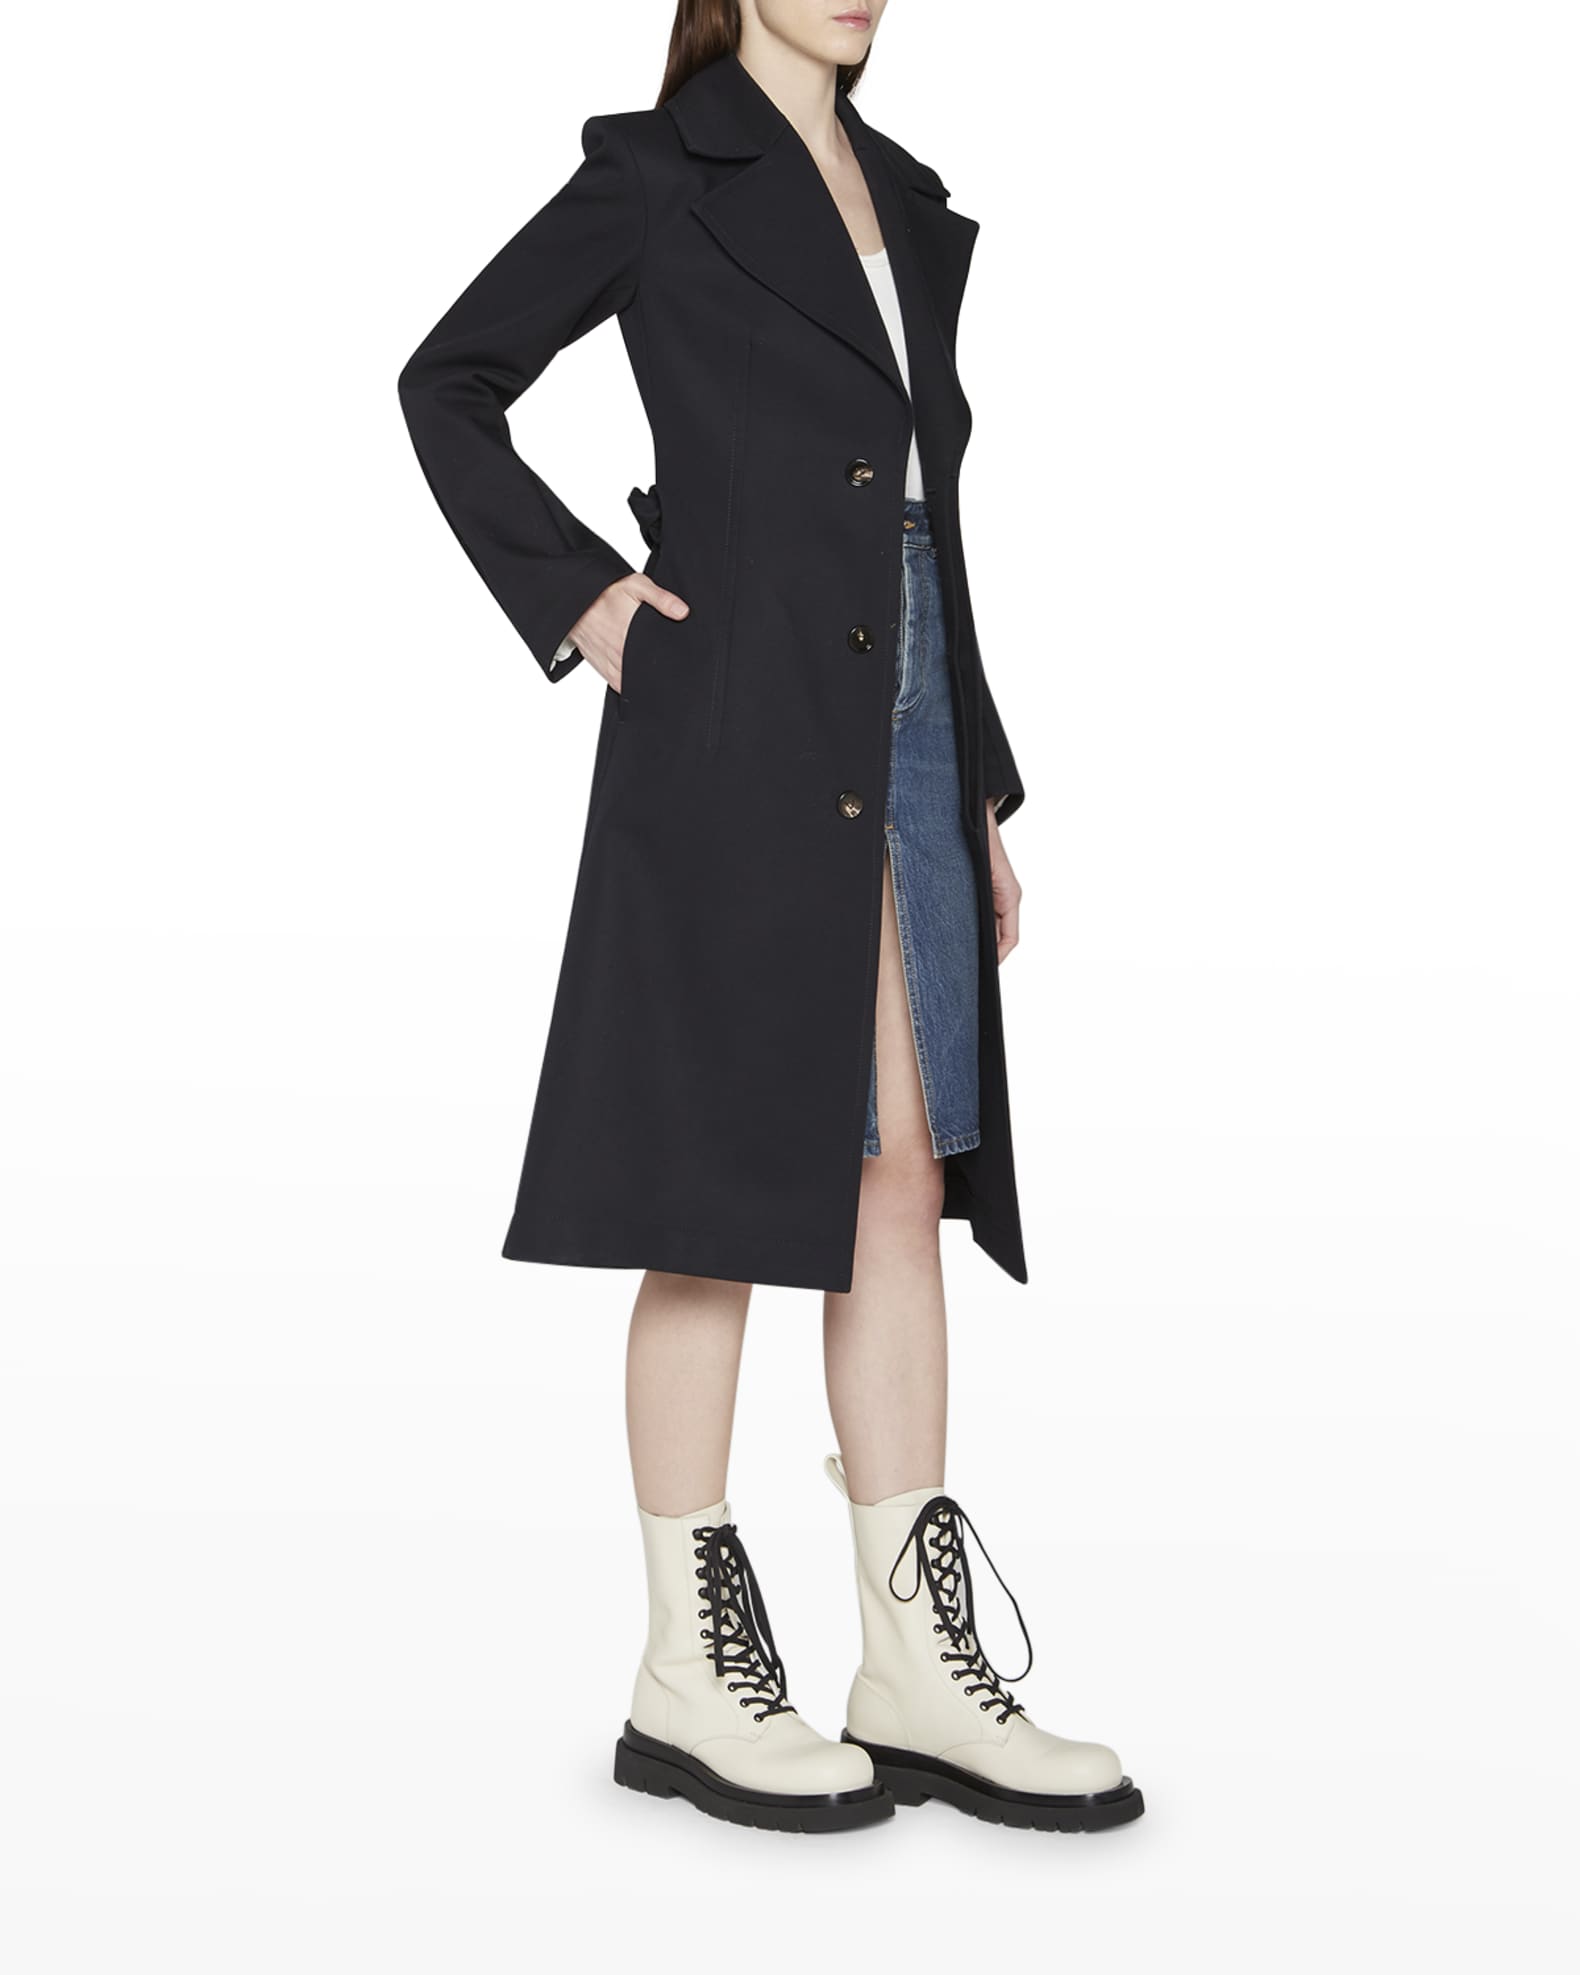 Look Stylish & Feel Cozy in Women's Uptown Long Wool Coat